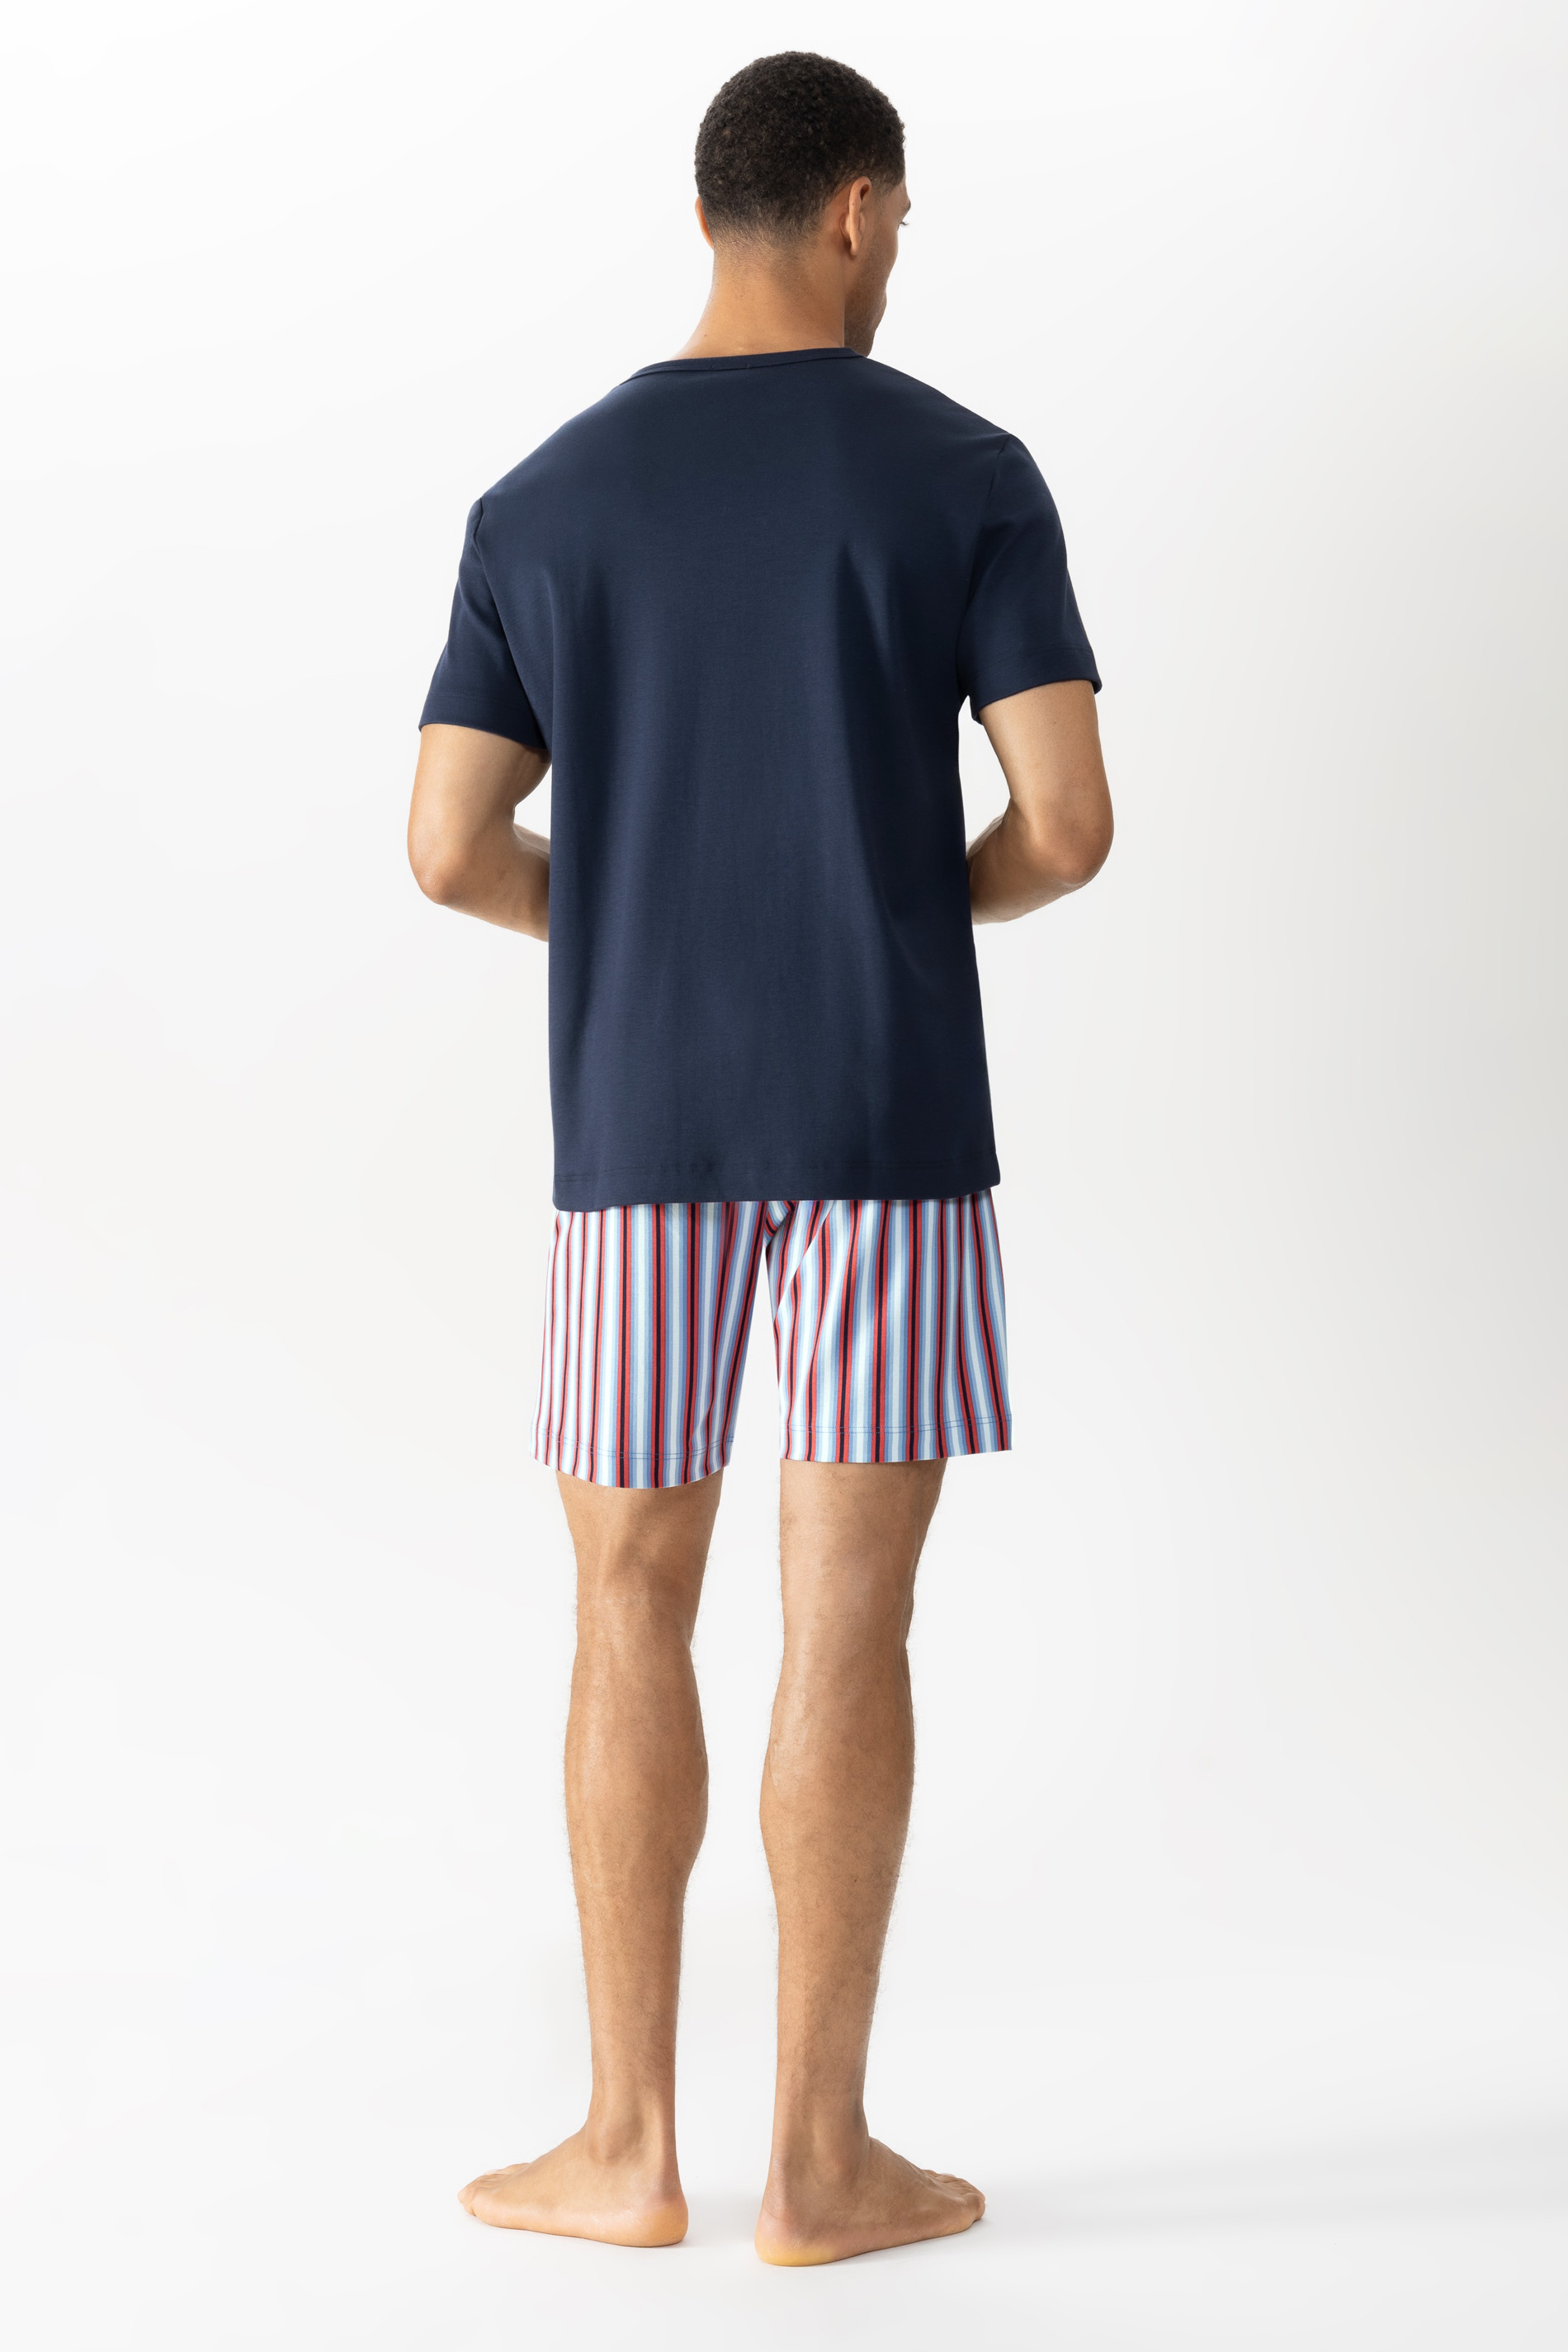 Schlafanzug Serie Gradient Stripes Rückansicht | mey®